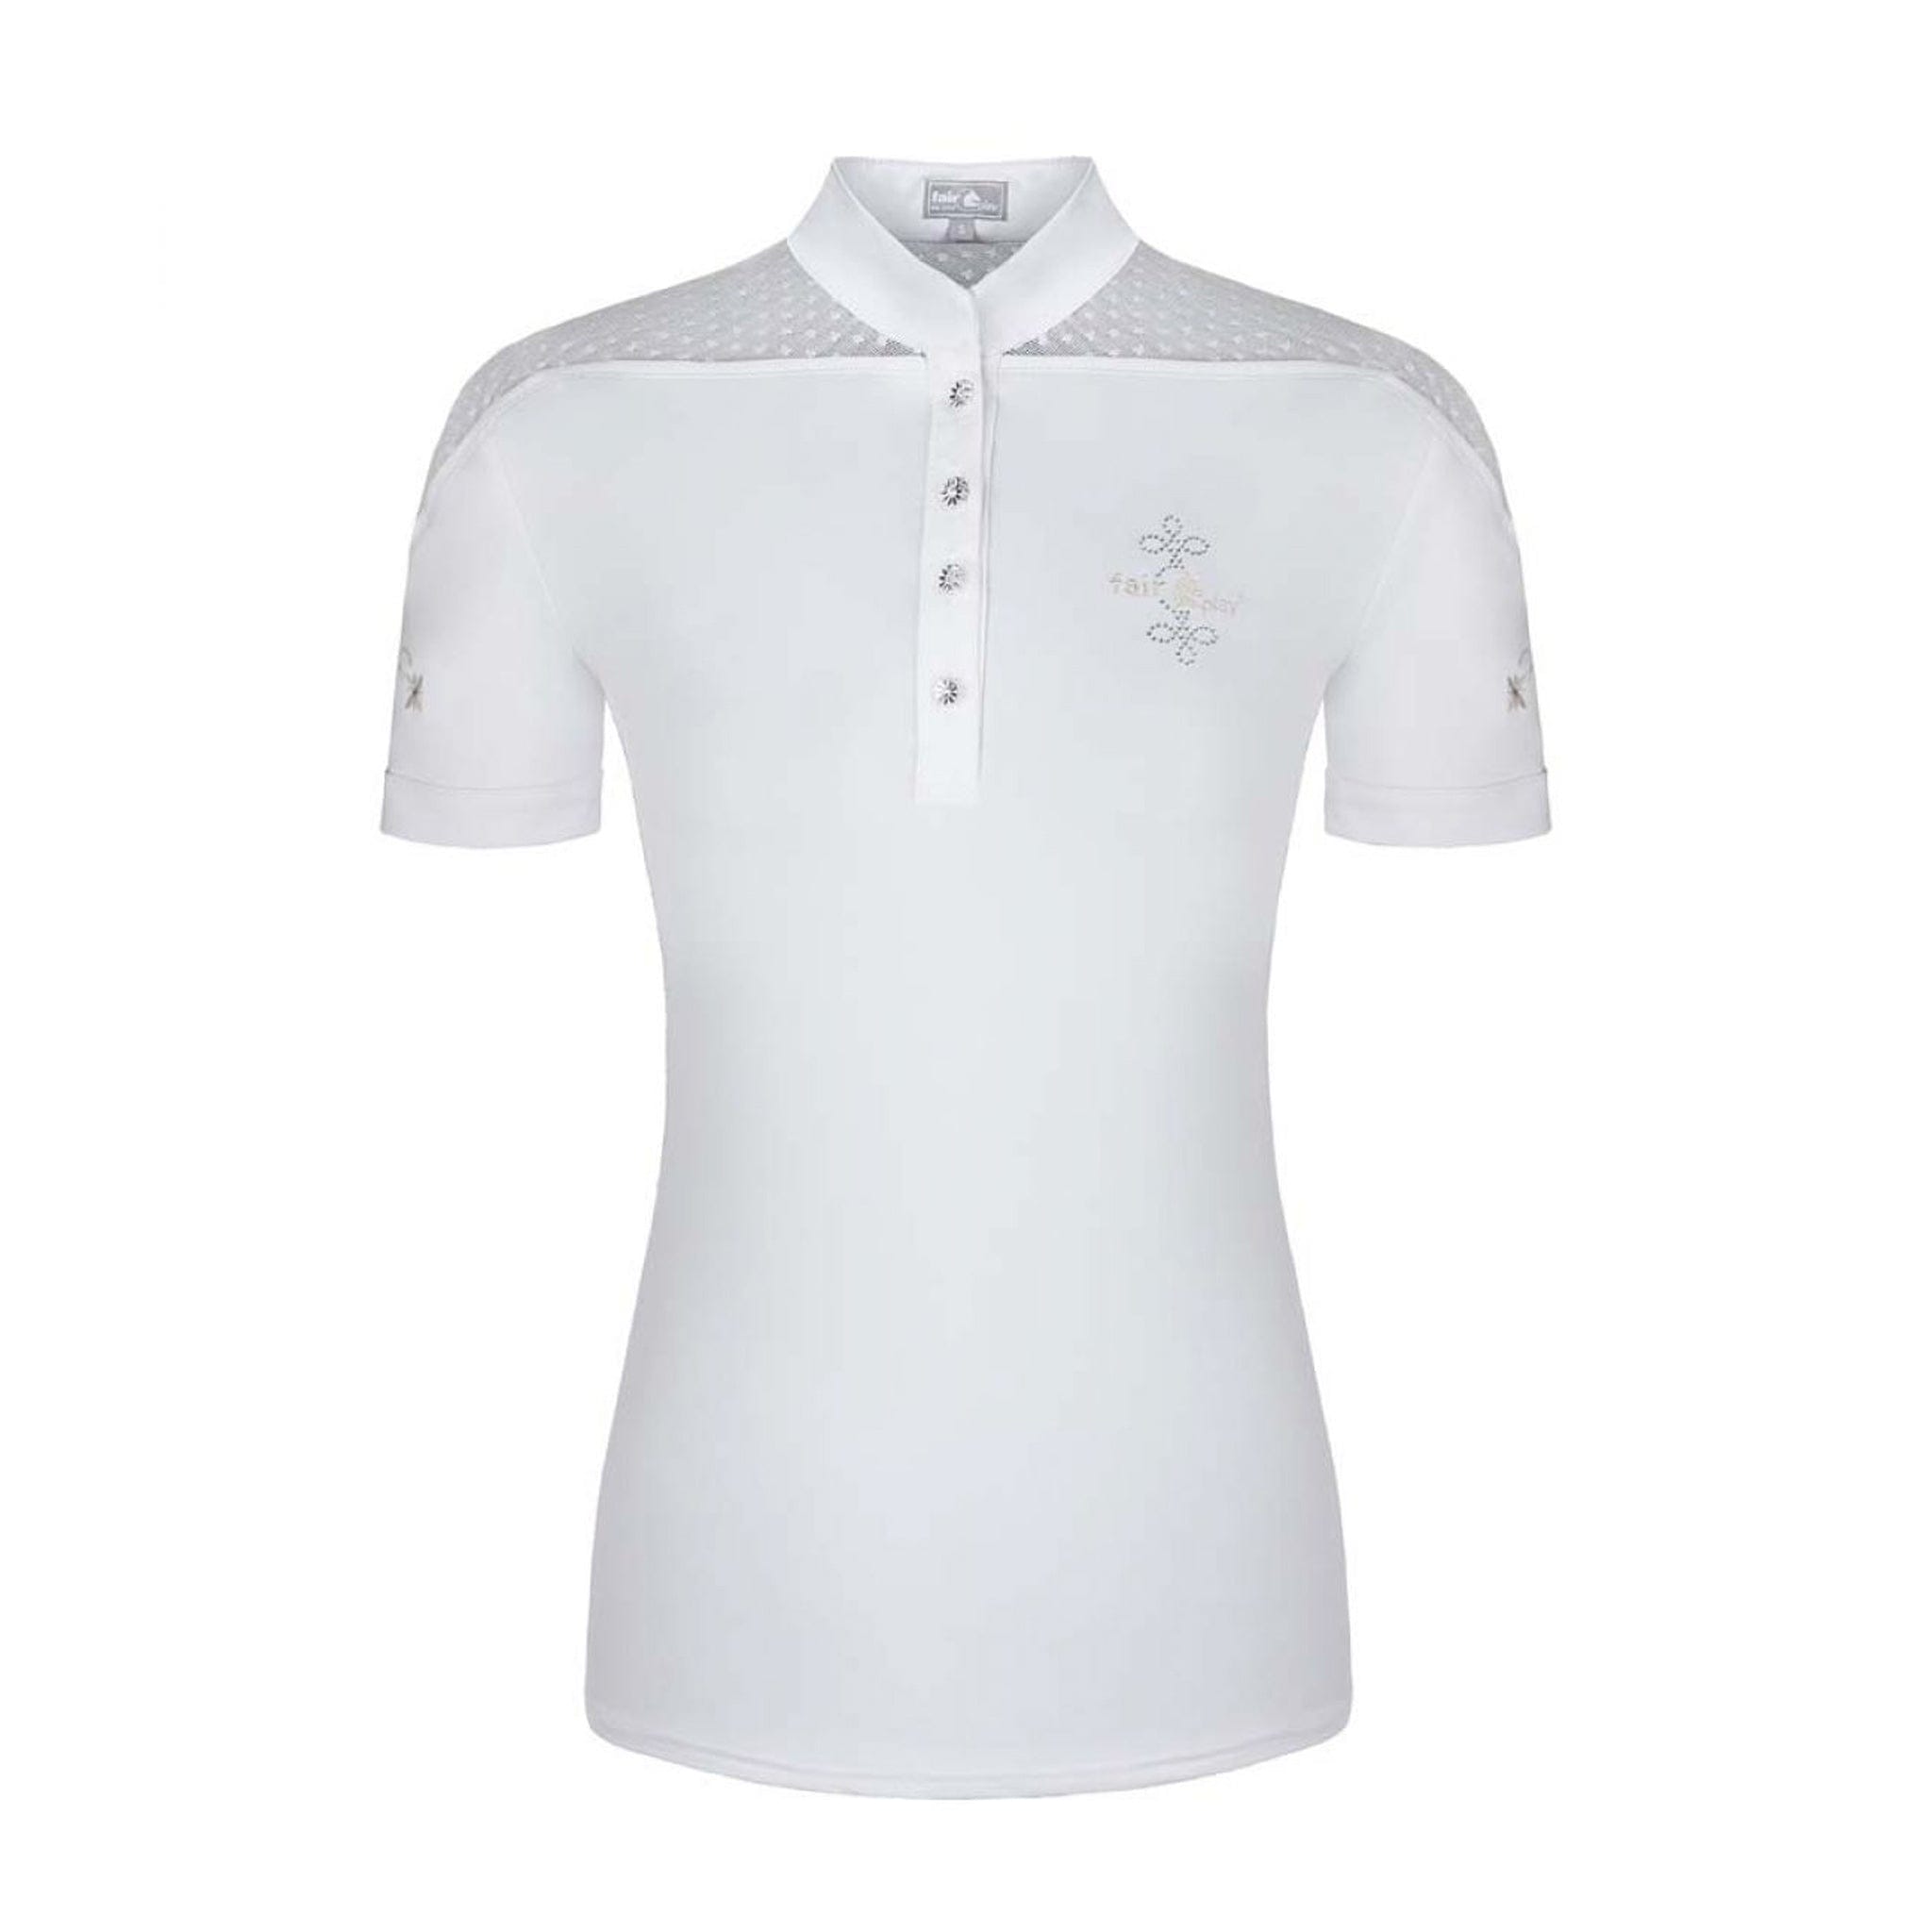 Fair Play Letizia Short Sleeve Show Shirt White 03241